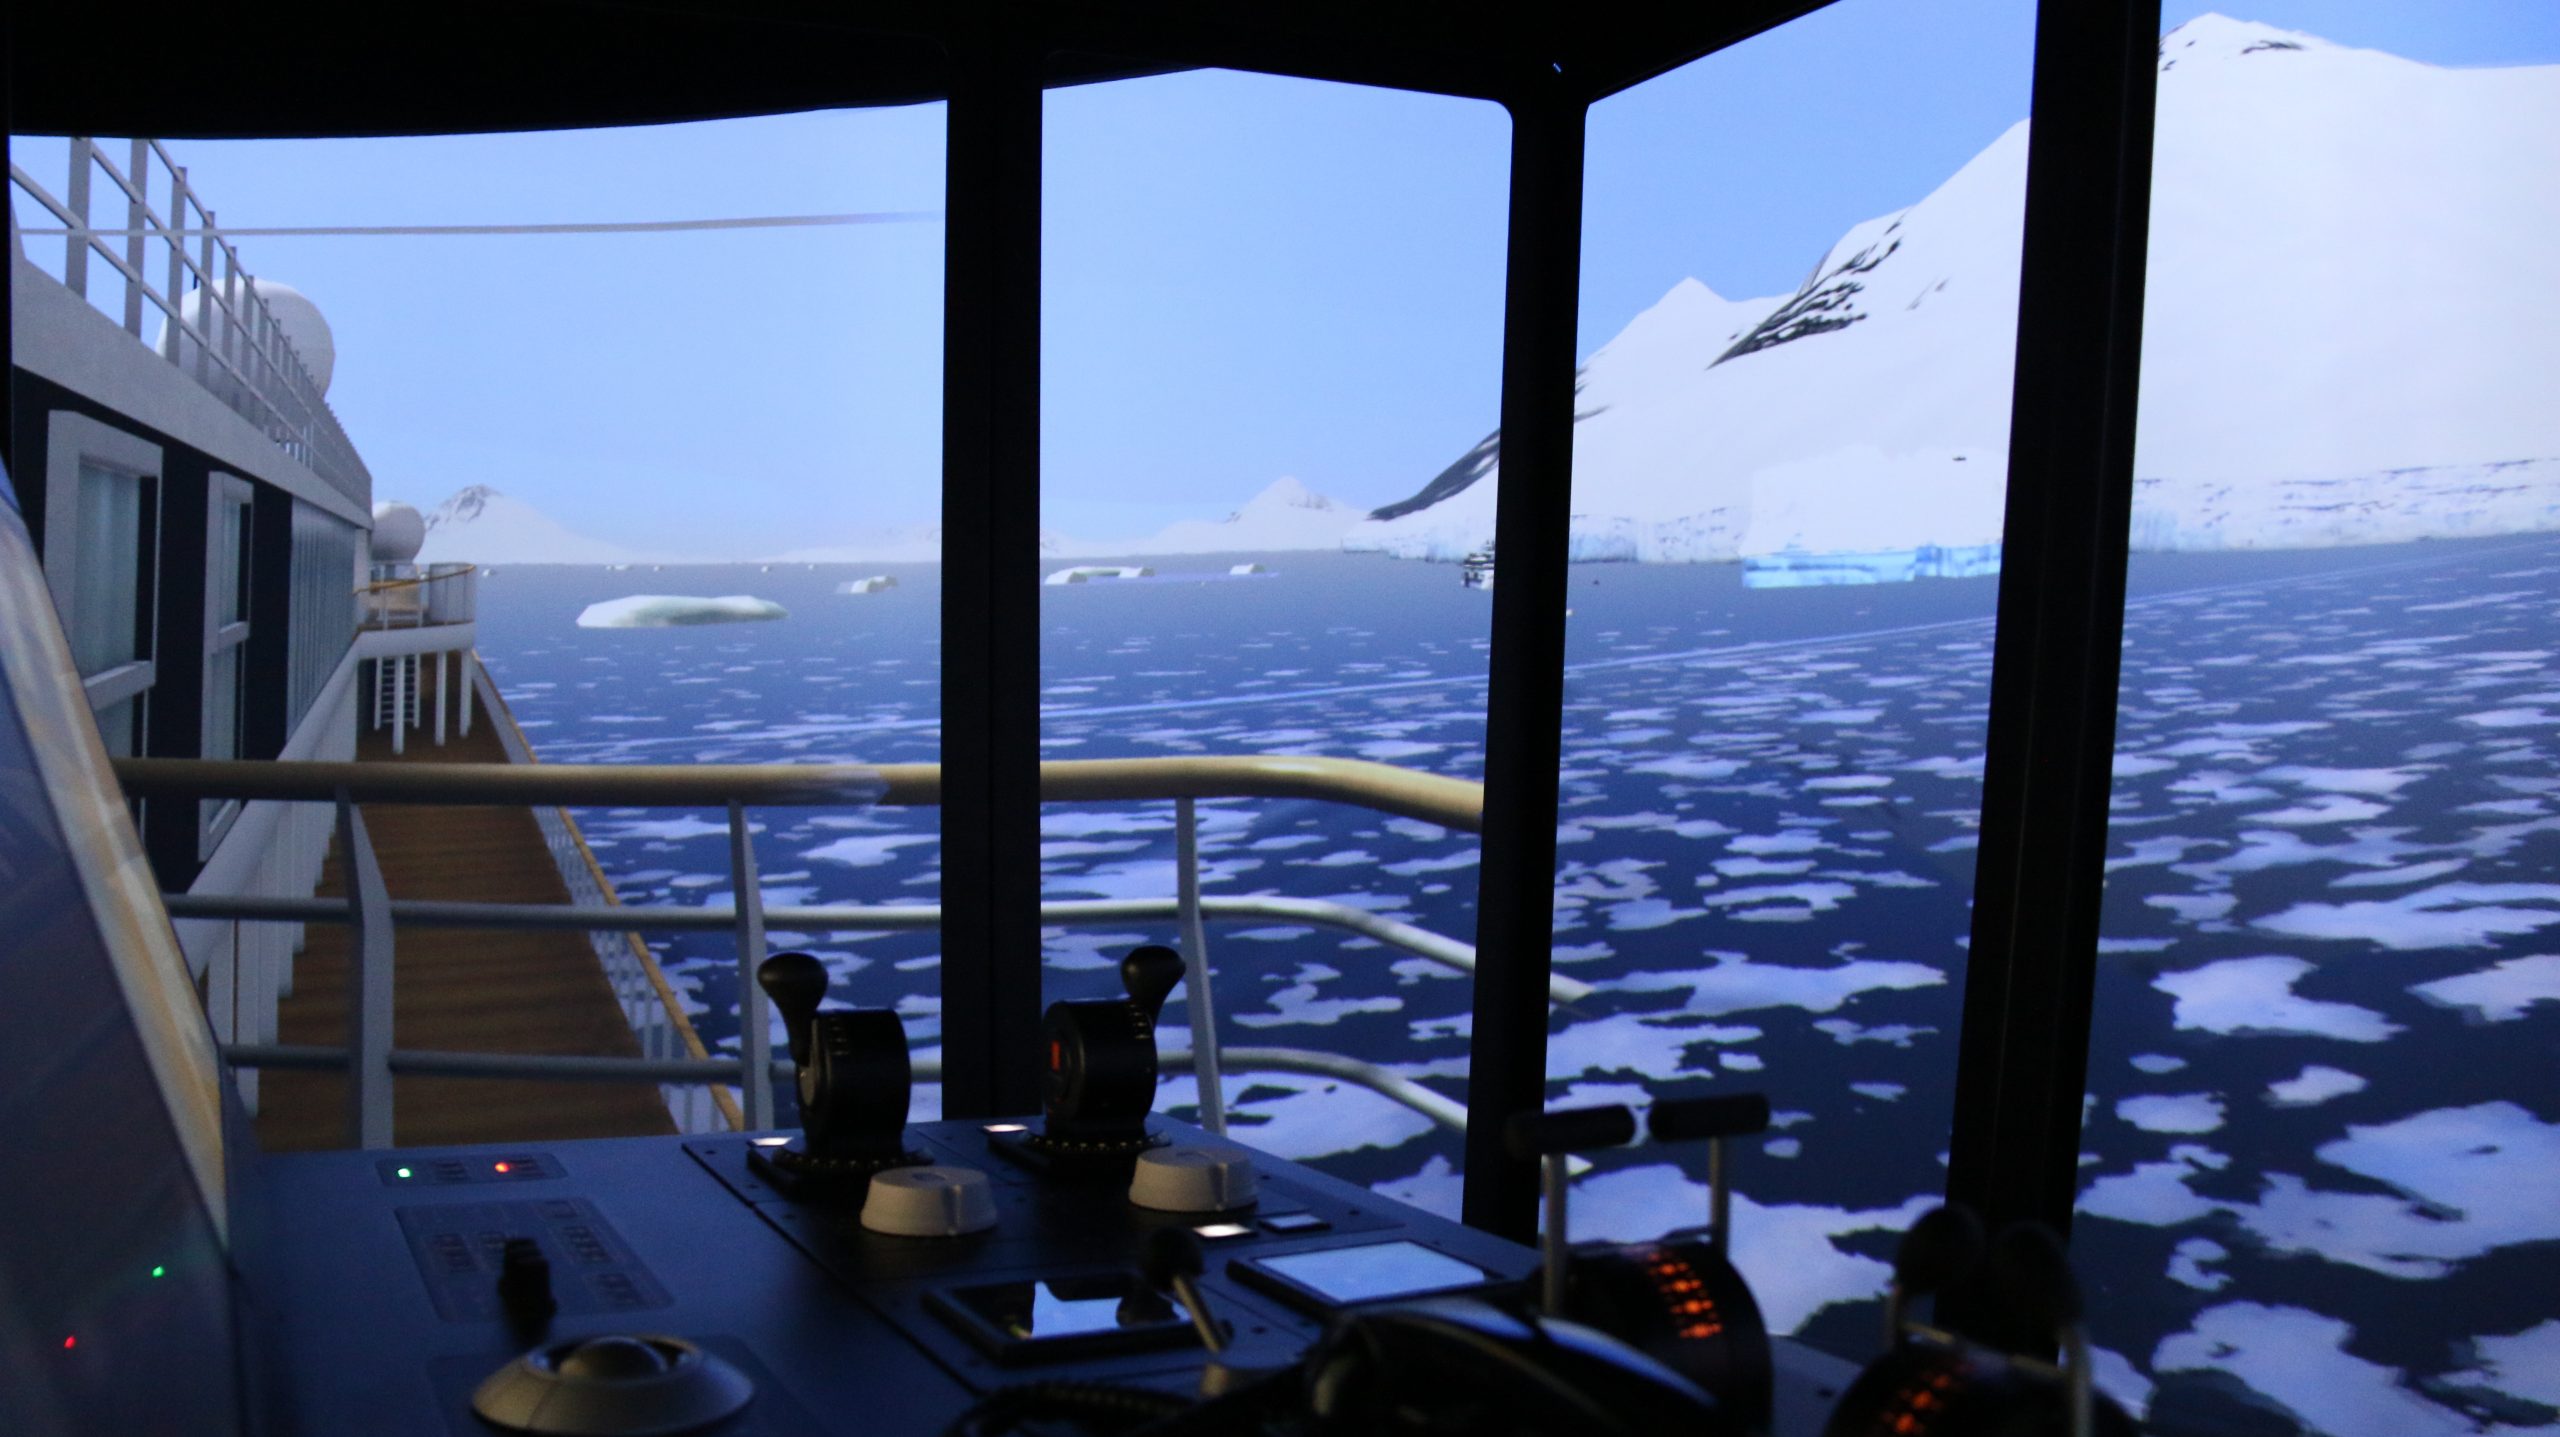 Detail van het uitzicht vanuit de simulator. (Beeld Simwave)